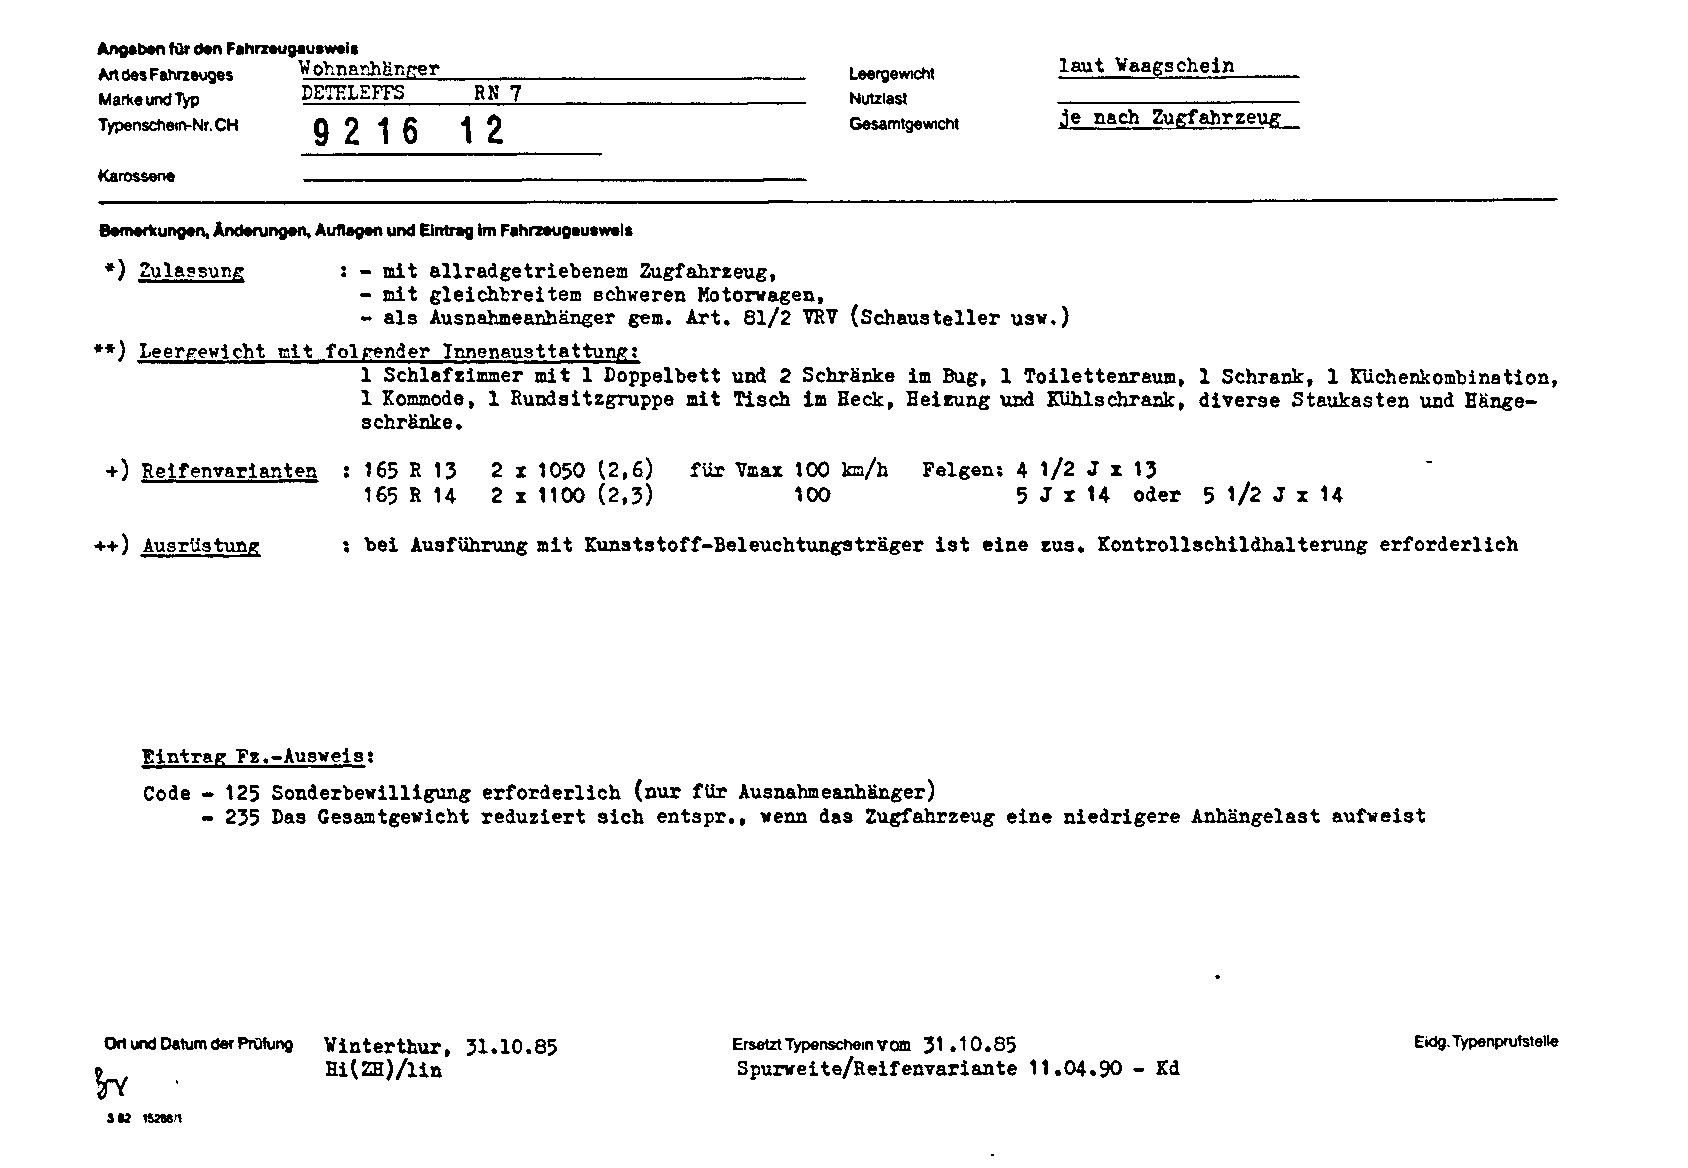 Swiss Certificate of Conformity 921612 German Page 2 (TG.DE.921612.2.png)